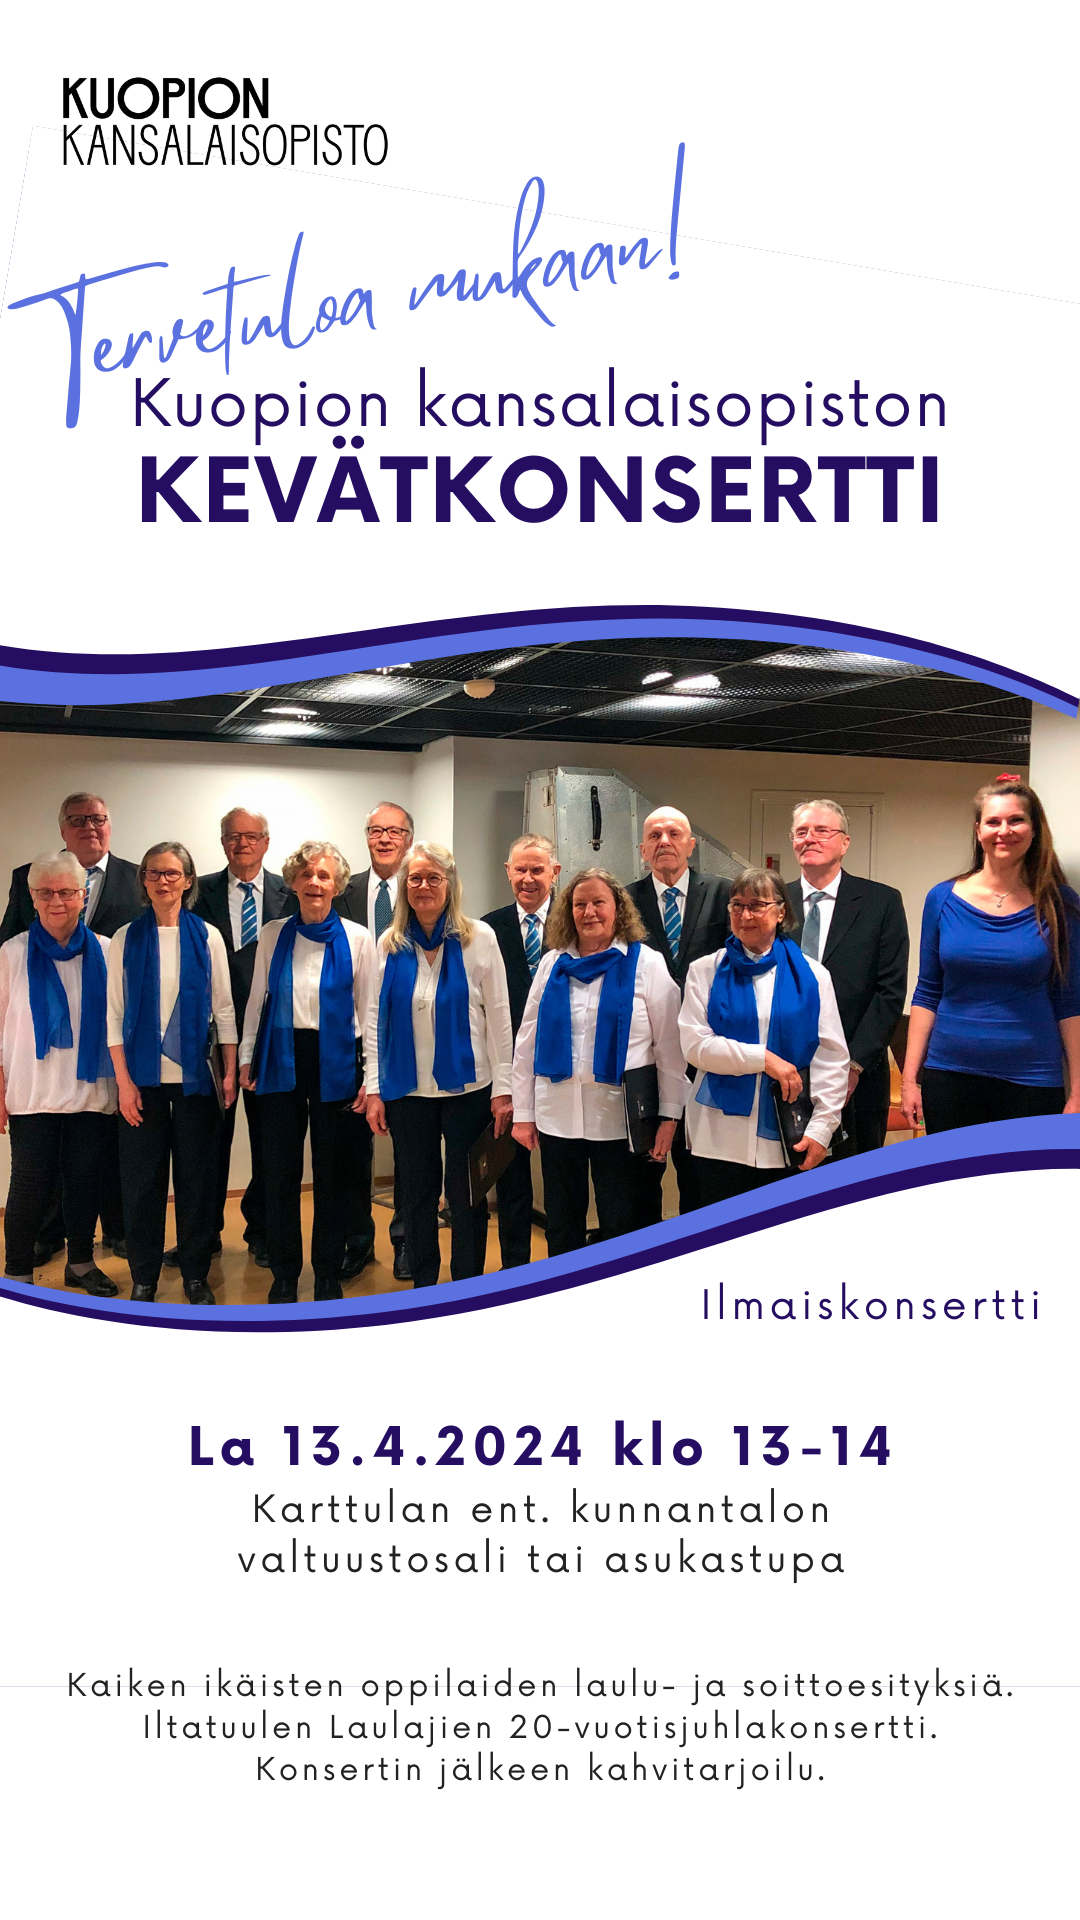 Kuopion kansalaisopiston Kevätkonsertti Karttulassa 13.4. klo 13-14